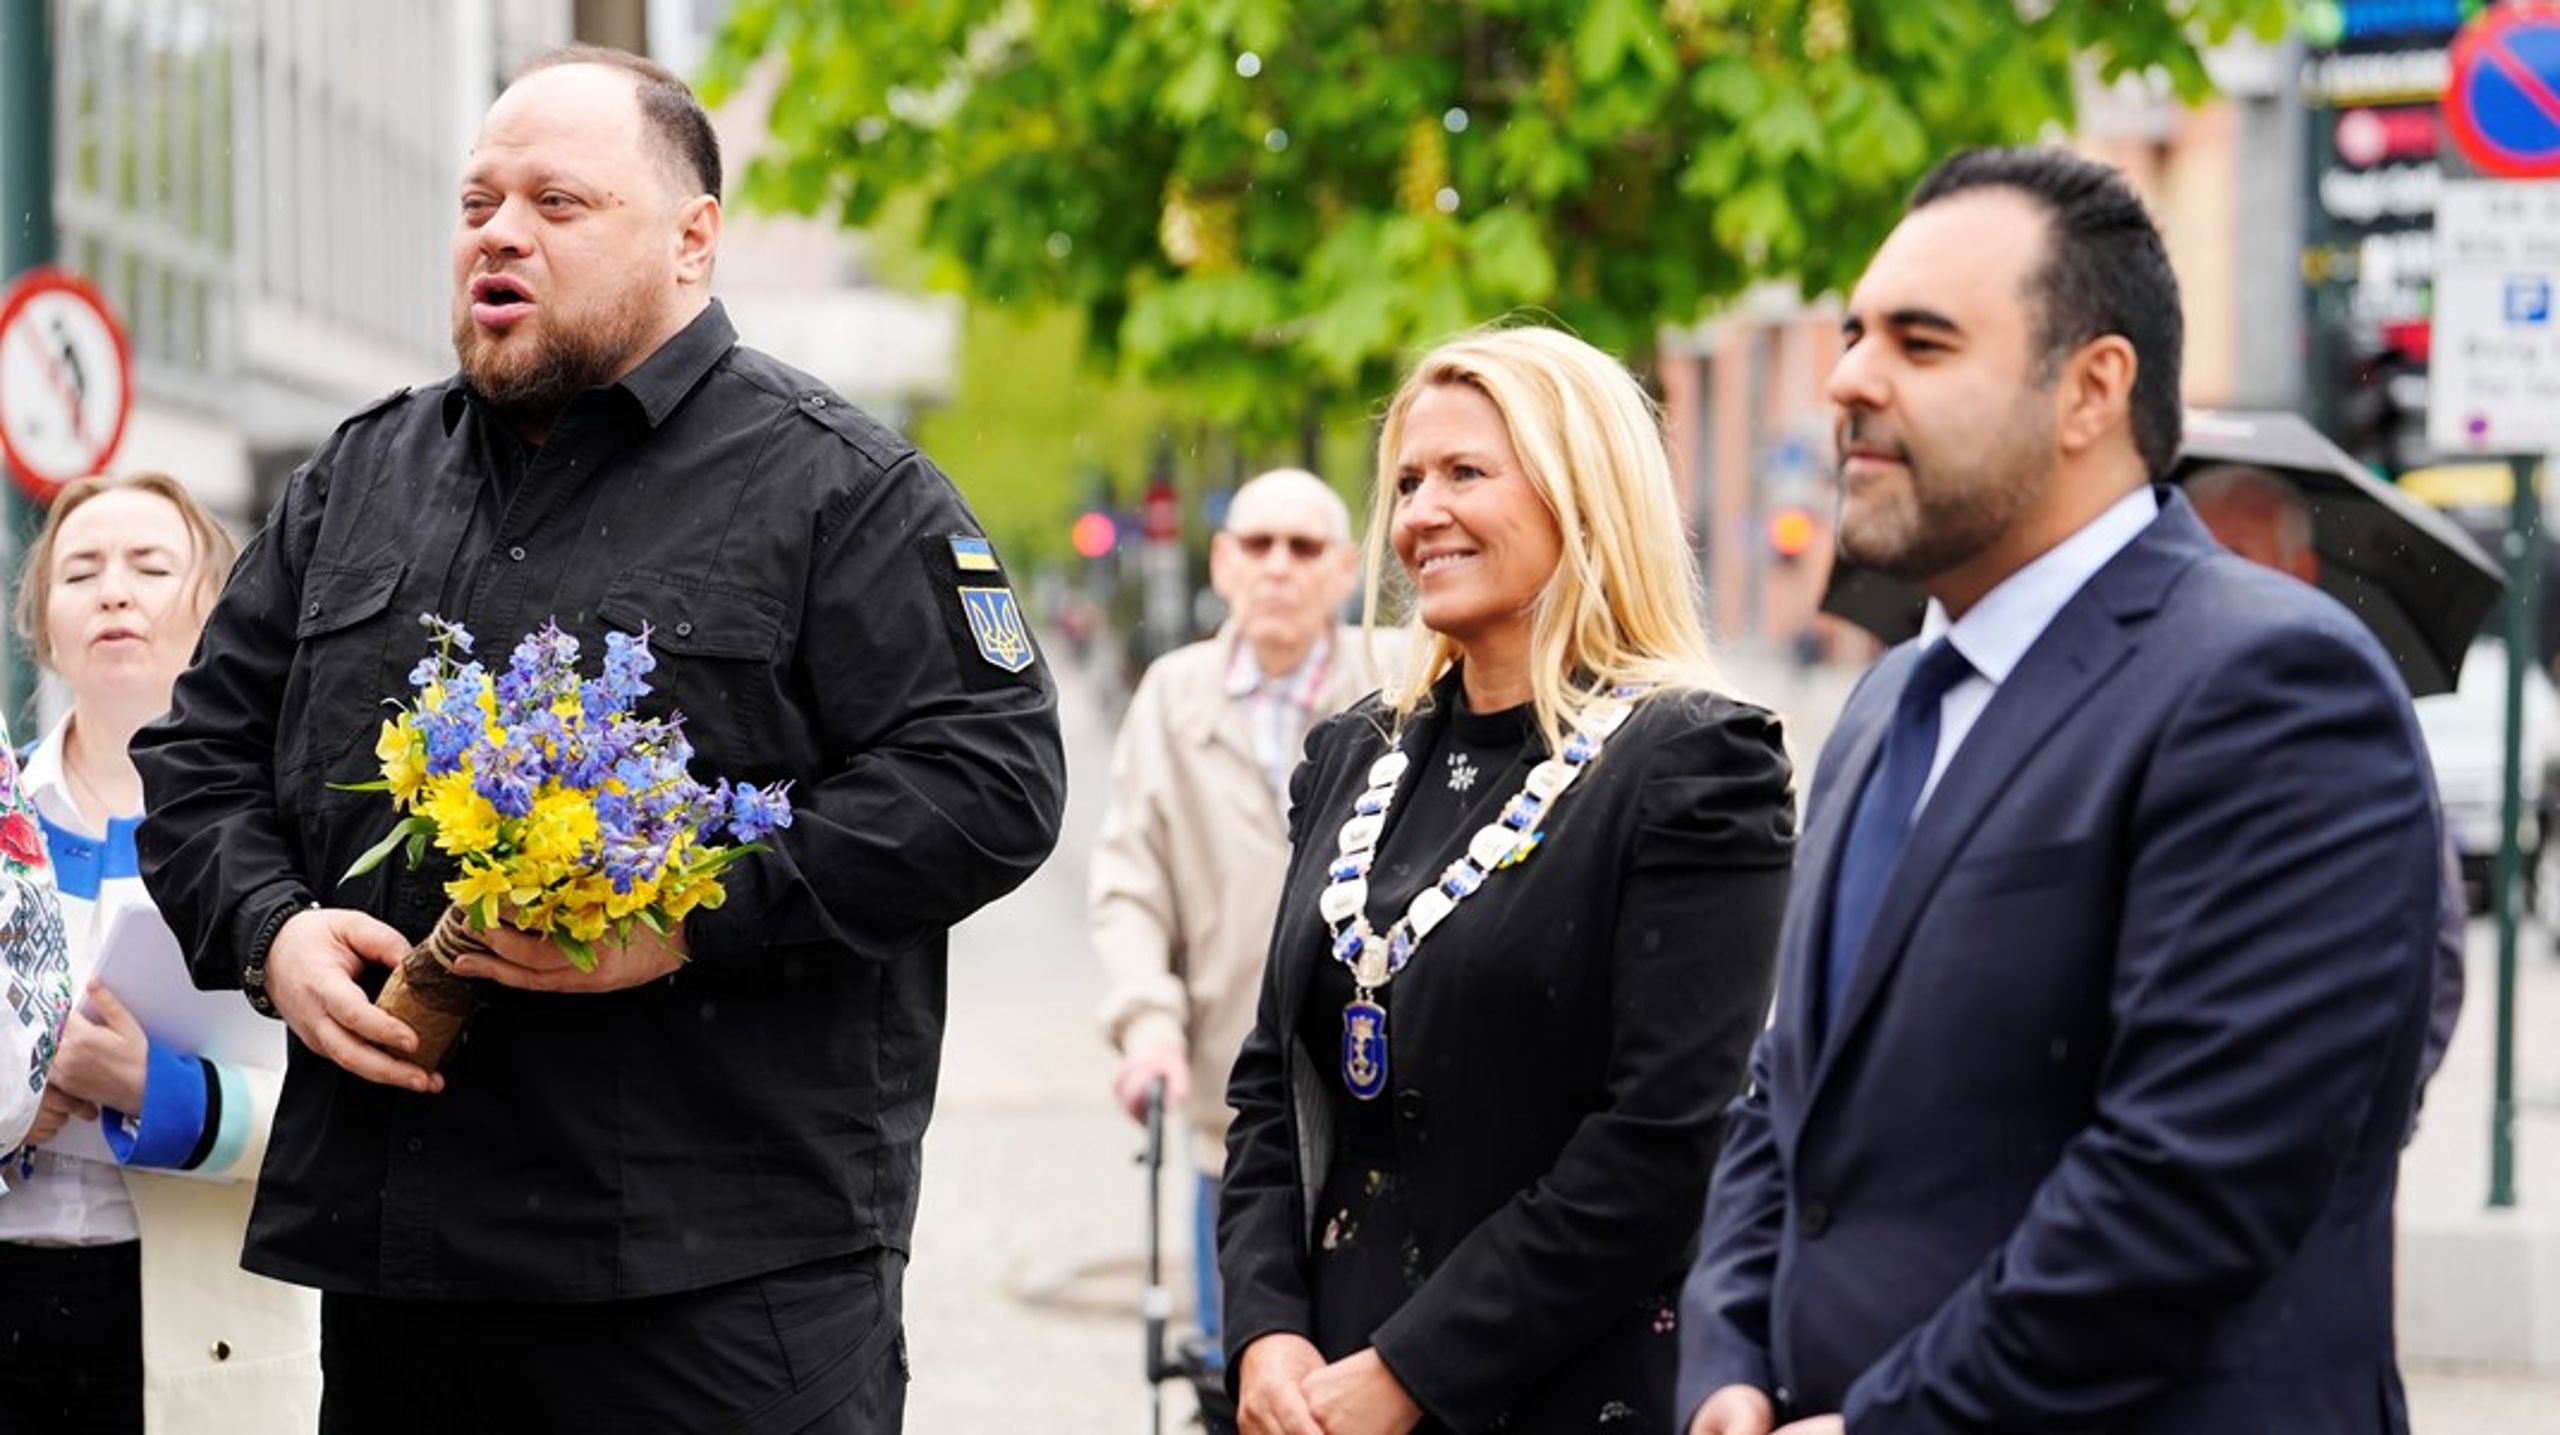 Ukrainas parlamentsformann Ruslan Stefantsjuk besøker Drammen. Her sammen med stortingspresident Masud Gharahkhani og ordfører Monica Myrvold Berg etter besøk i Drammen rådhus.